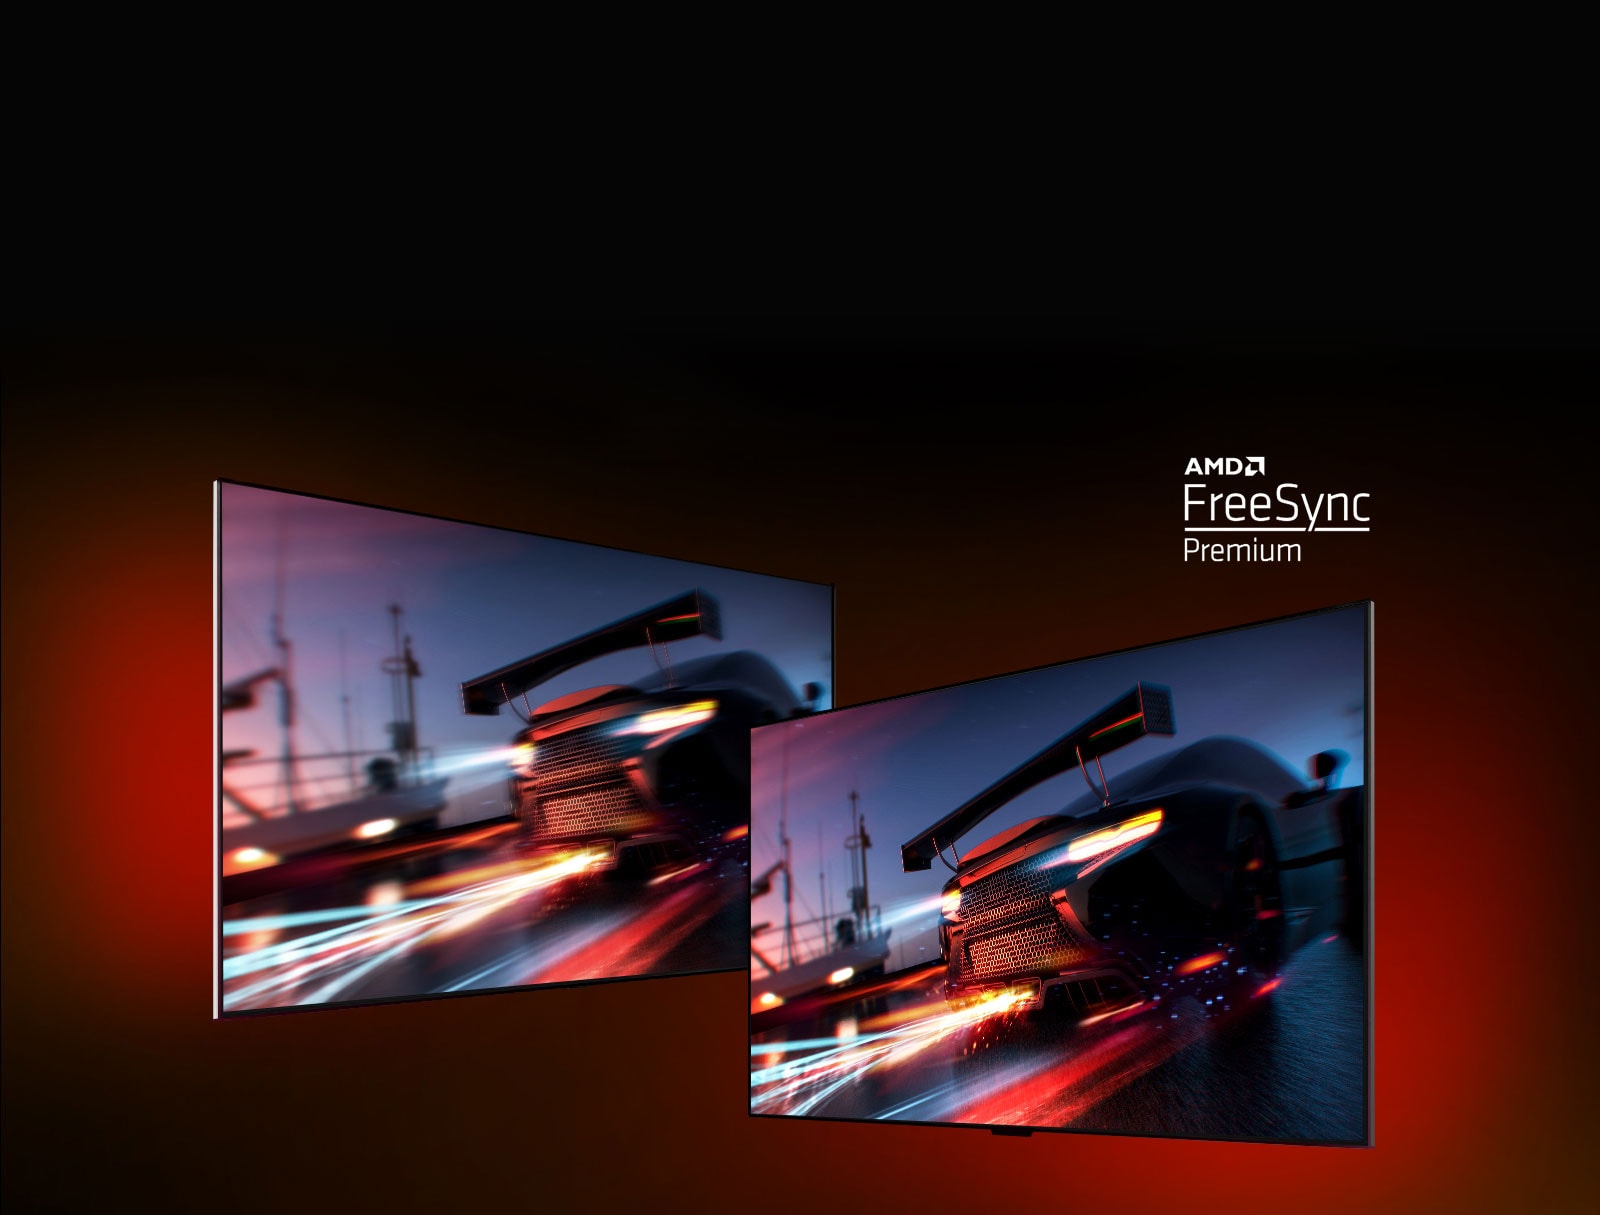 Два телевізори: на лівому показано автомобіль у перегоновій грі, на правому — те саме зображення, але яскравіше й чіткіше. У правому верхньому куті розташовано логотип AMD FreeSync Premium.  